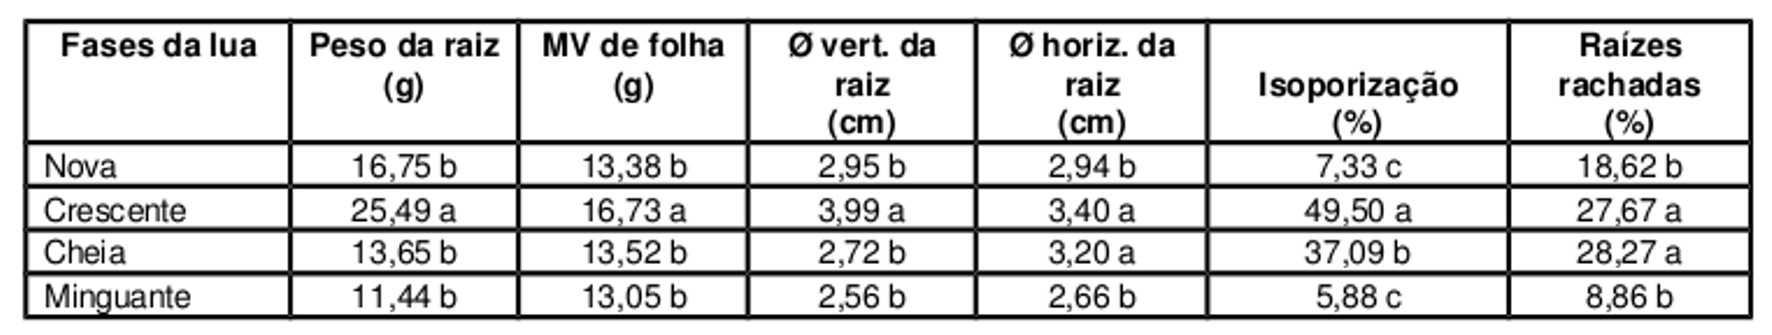 Menin et al. Para a variável diâmetro vertical da raiz tuberosa de rabanete a fase da lua quarto crescente apresentou resultados superiores (Tabela 2).